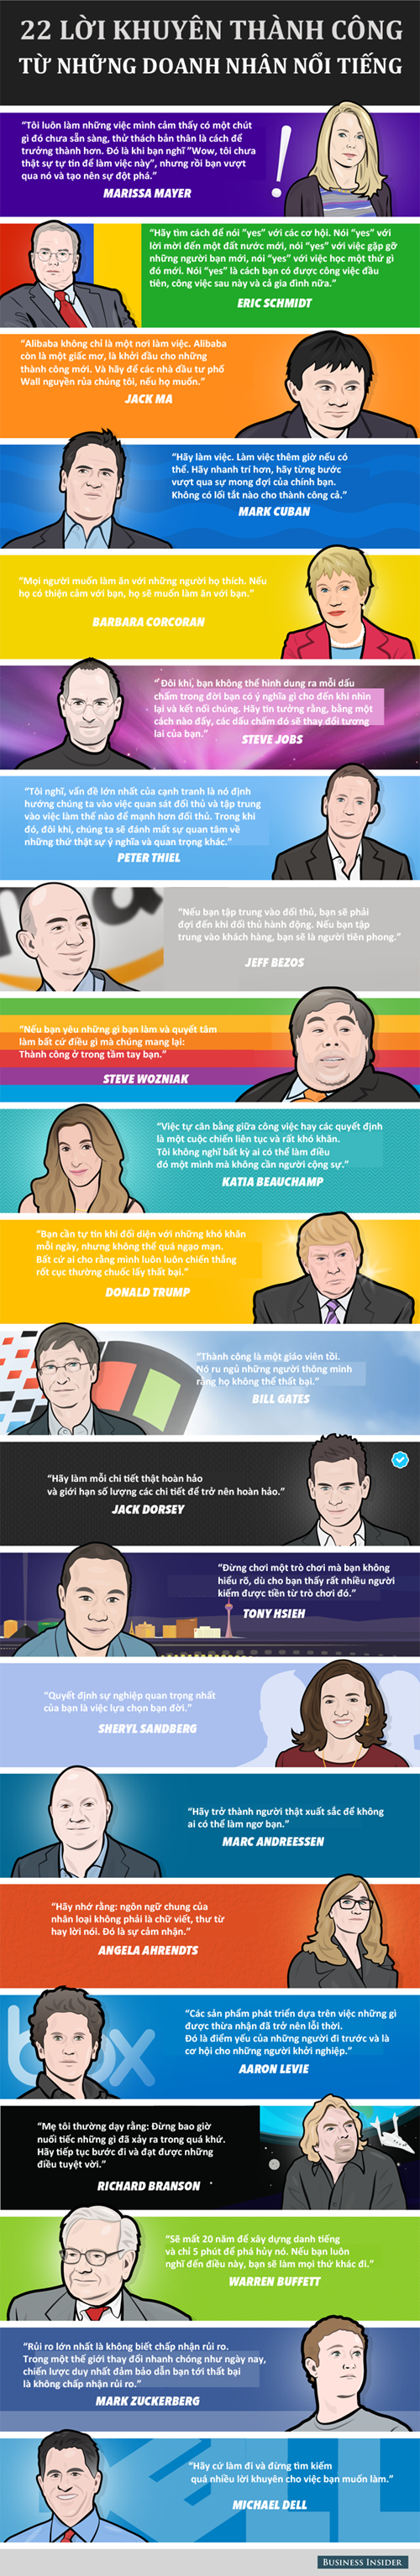 [Infographic] Định nghĩa về thành công của các doanh nhân nổi tiếng